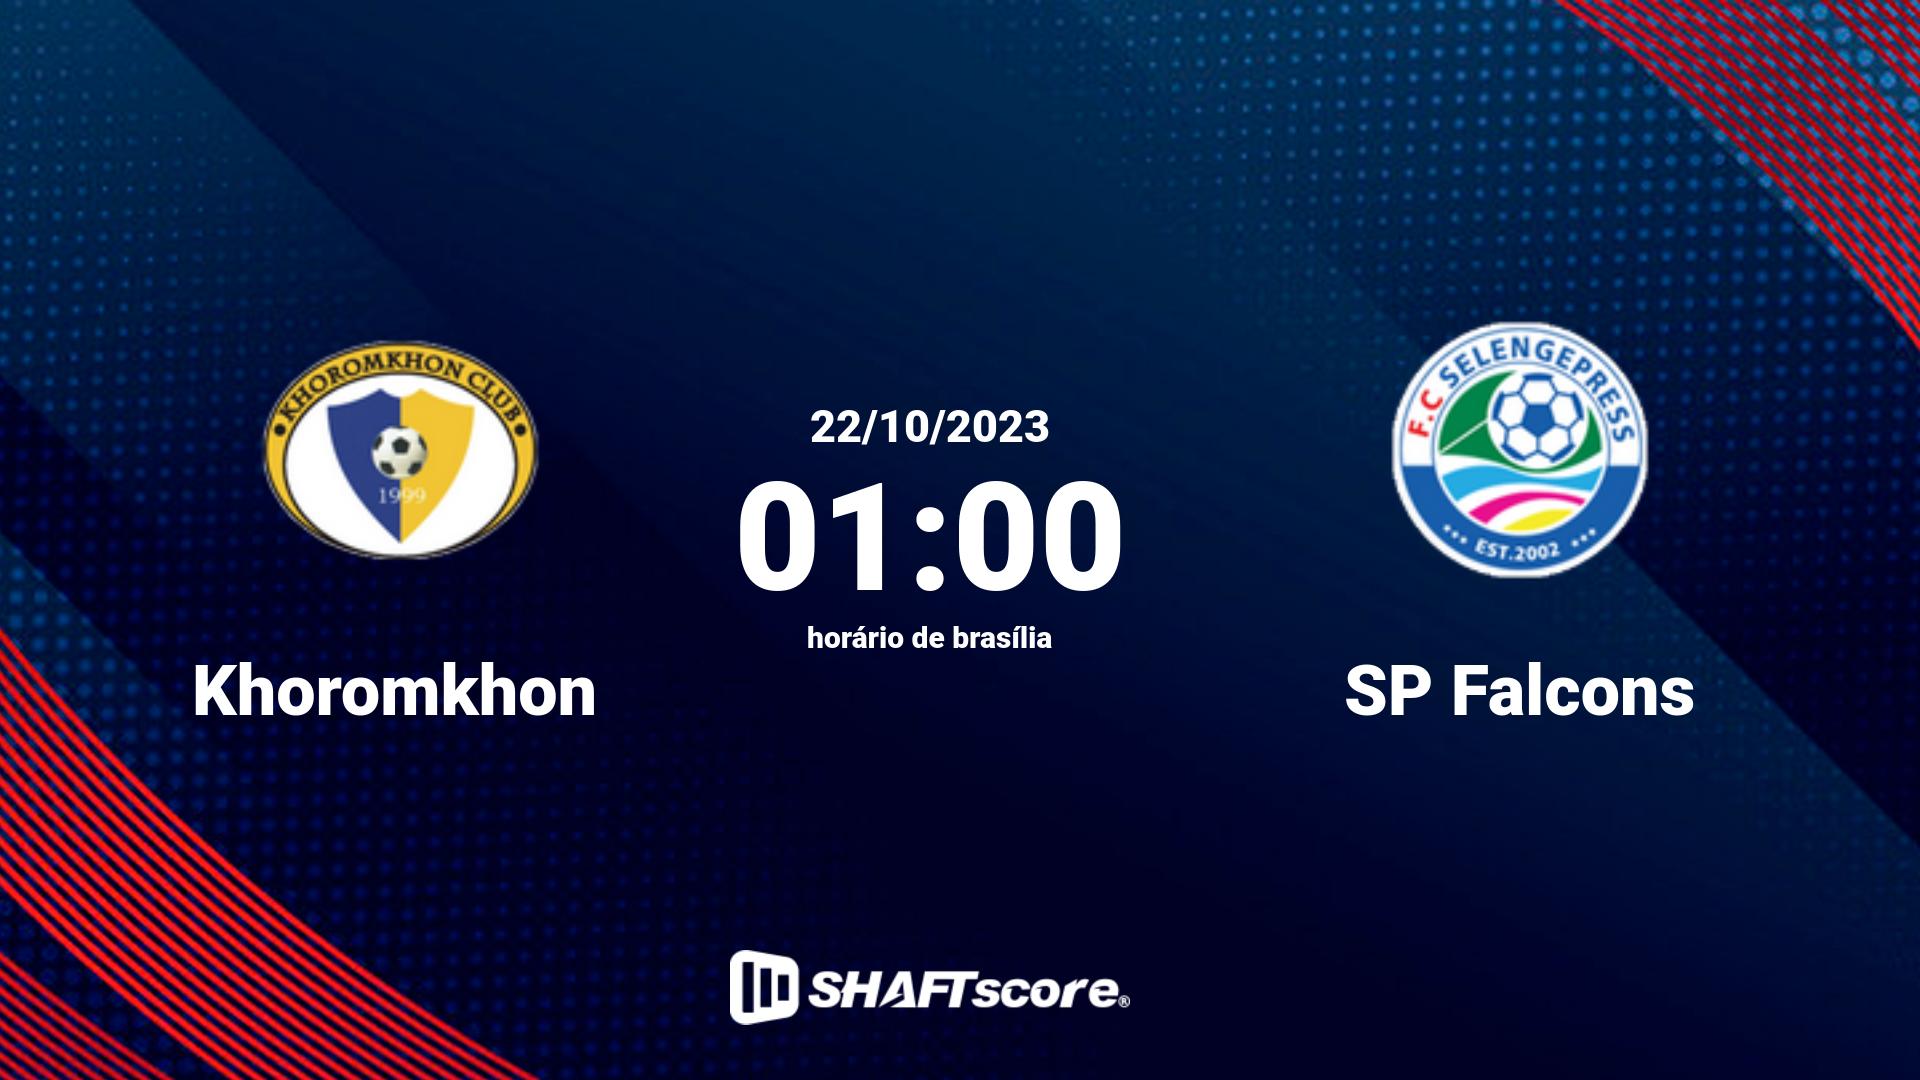 Estatísticas do jogo Khoromkhon vs SP Falcons 22.10 01:00